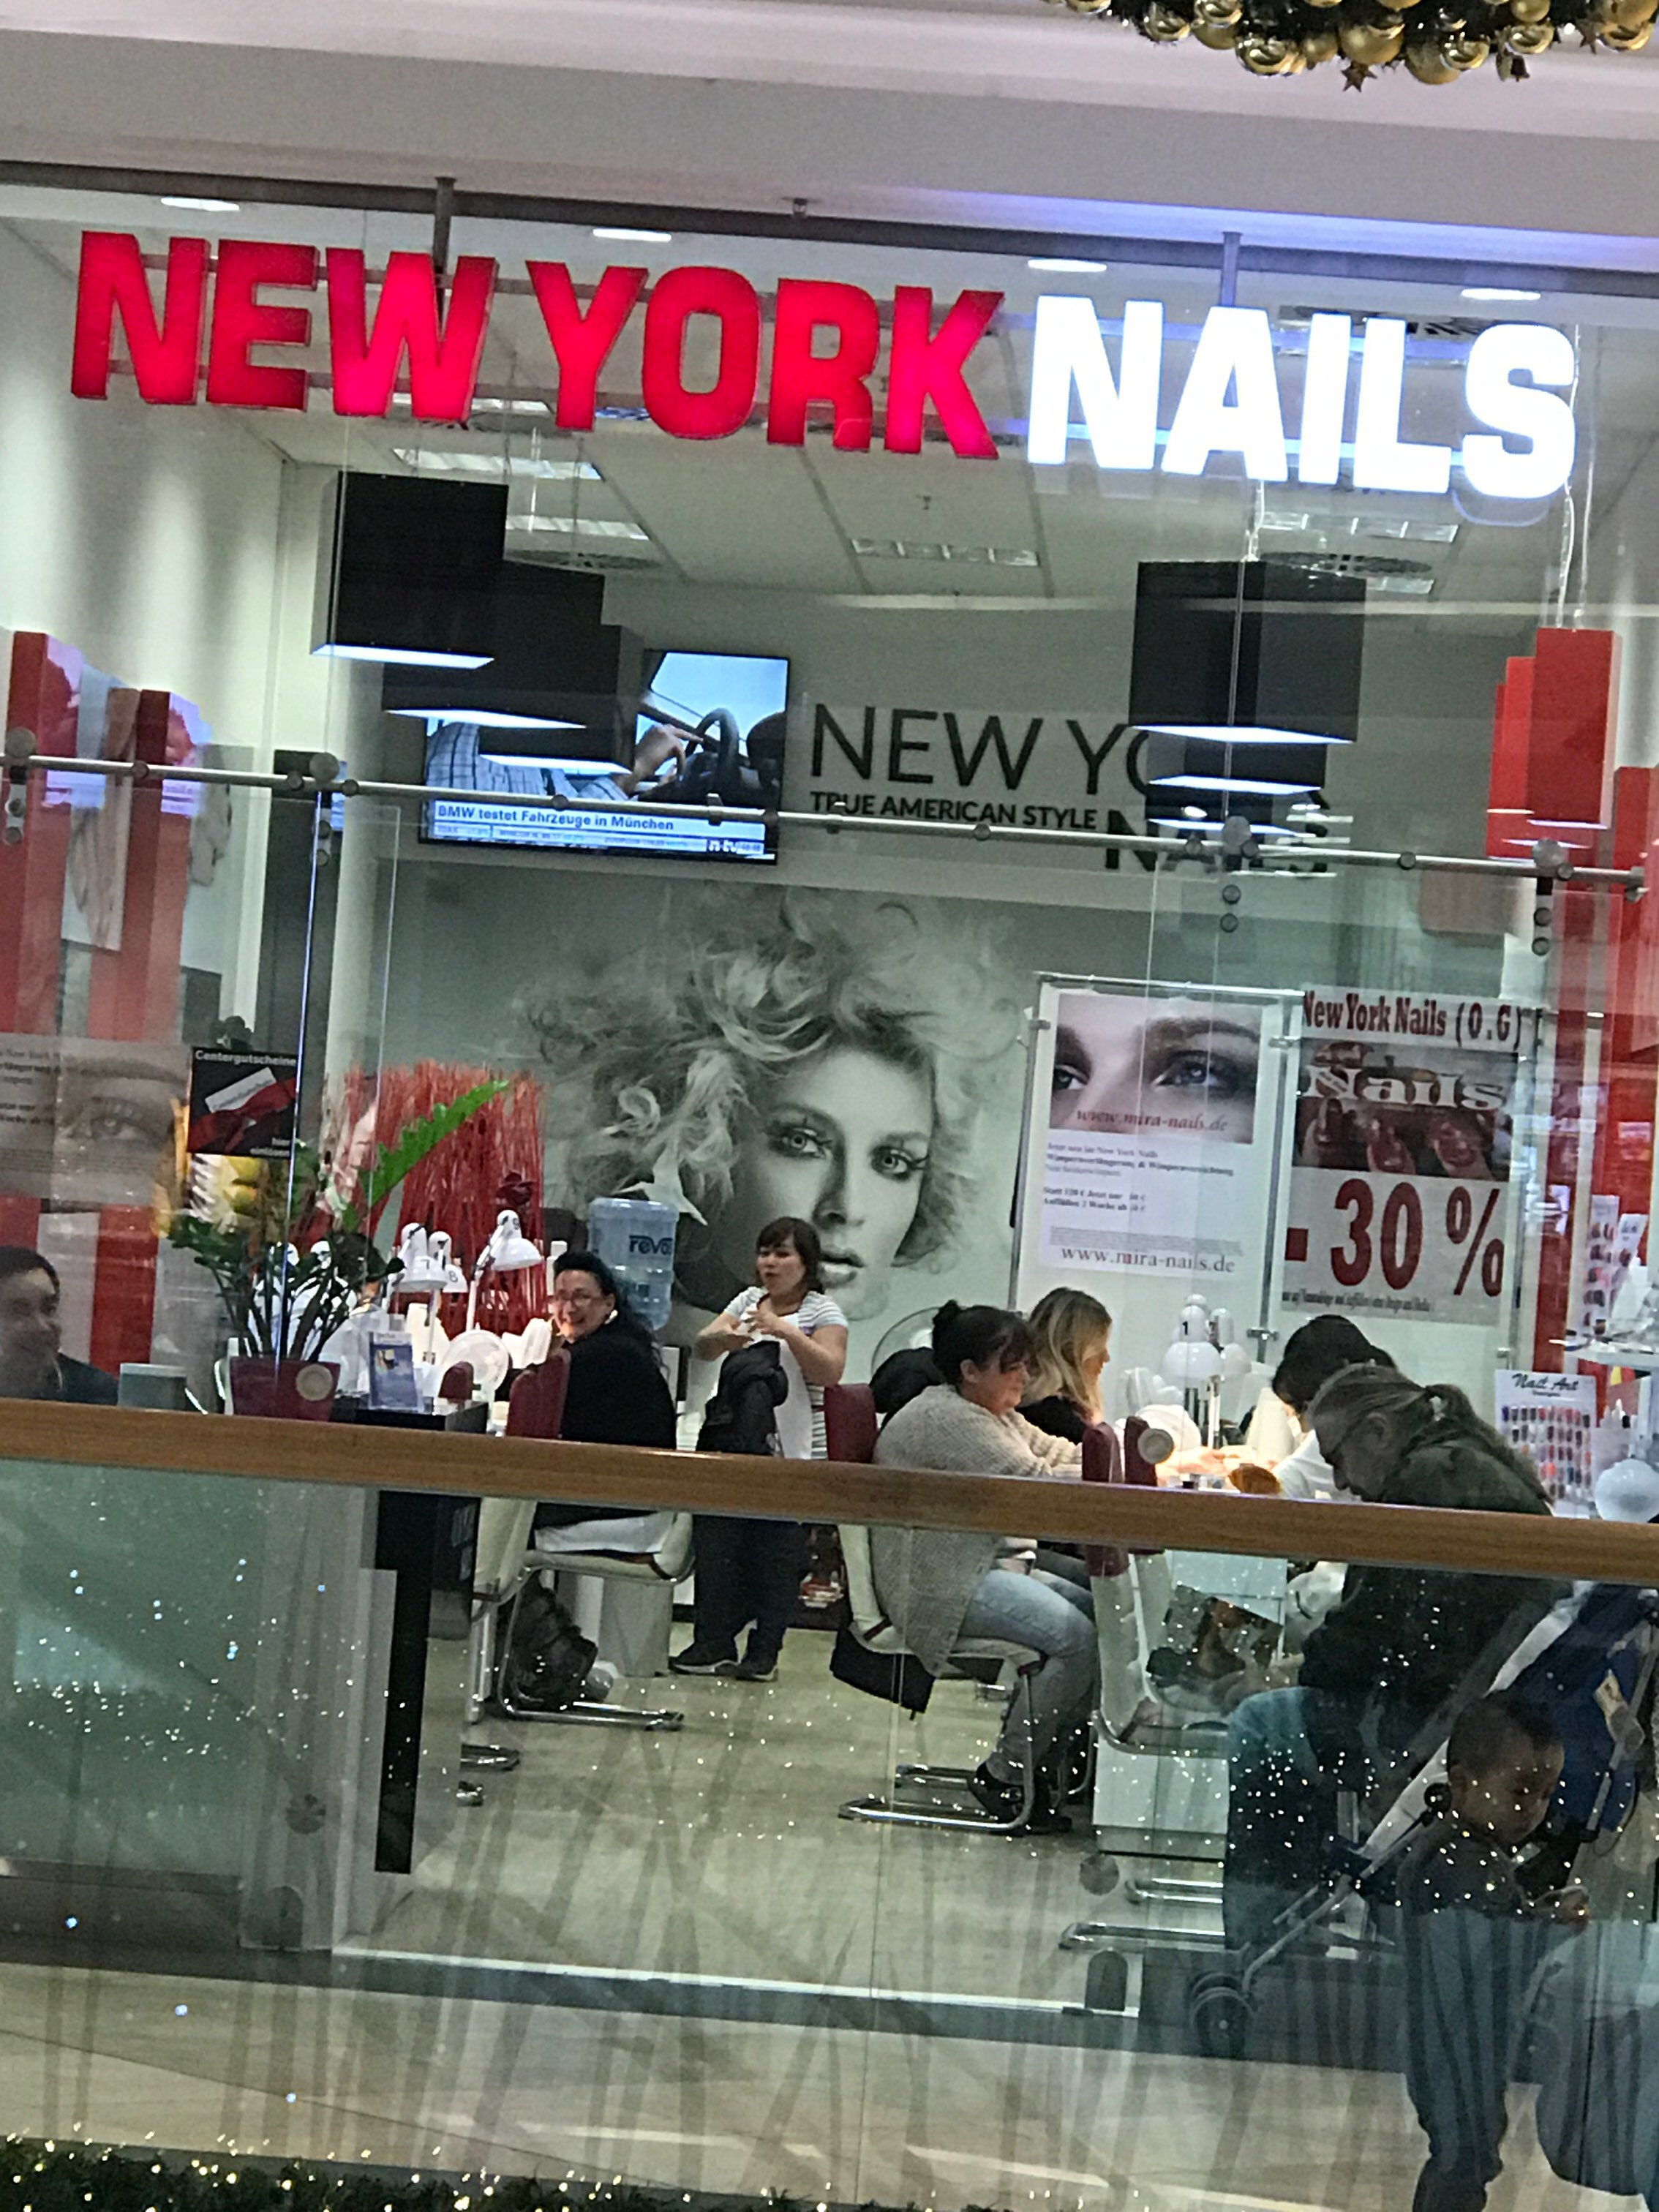 Bild 1 New York Nails, Mira Center in München